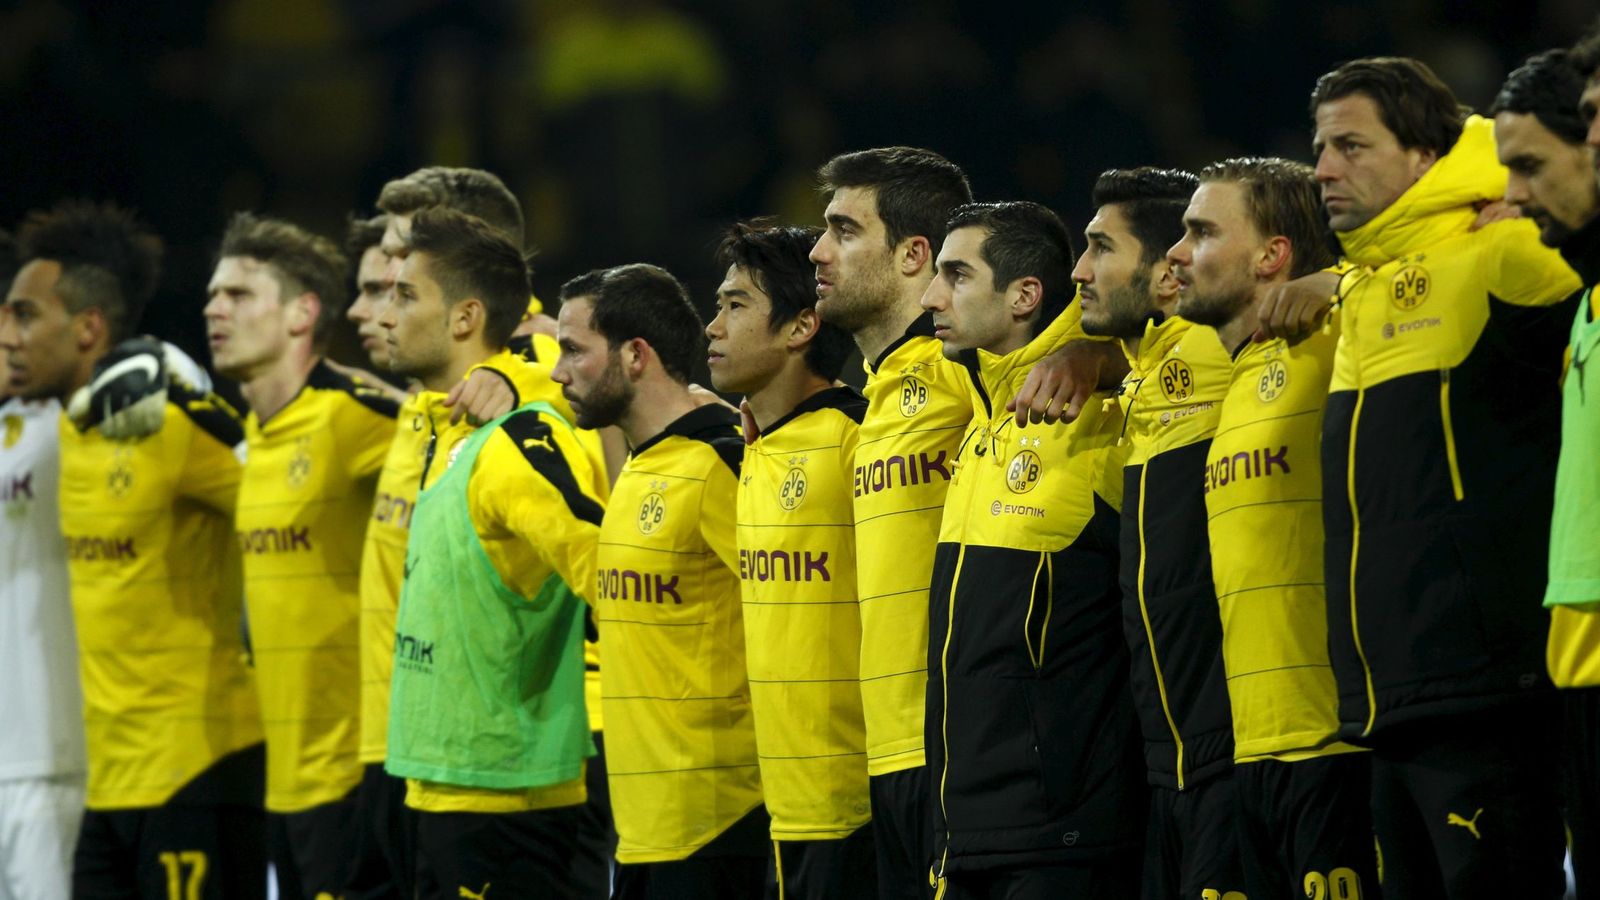 Foto: Los jugadores del Borussia Dortmund, abrazados al final del partido. (Efe)